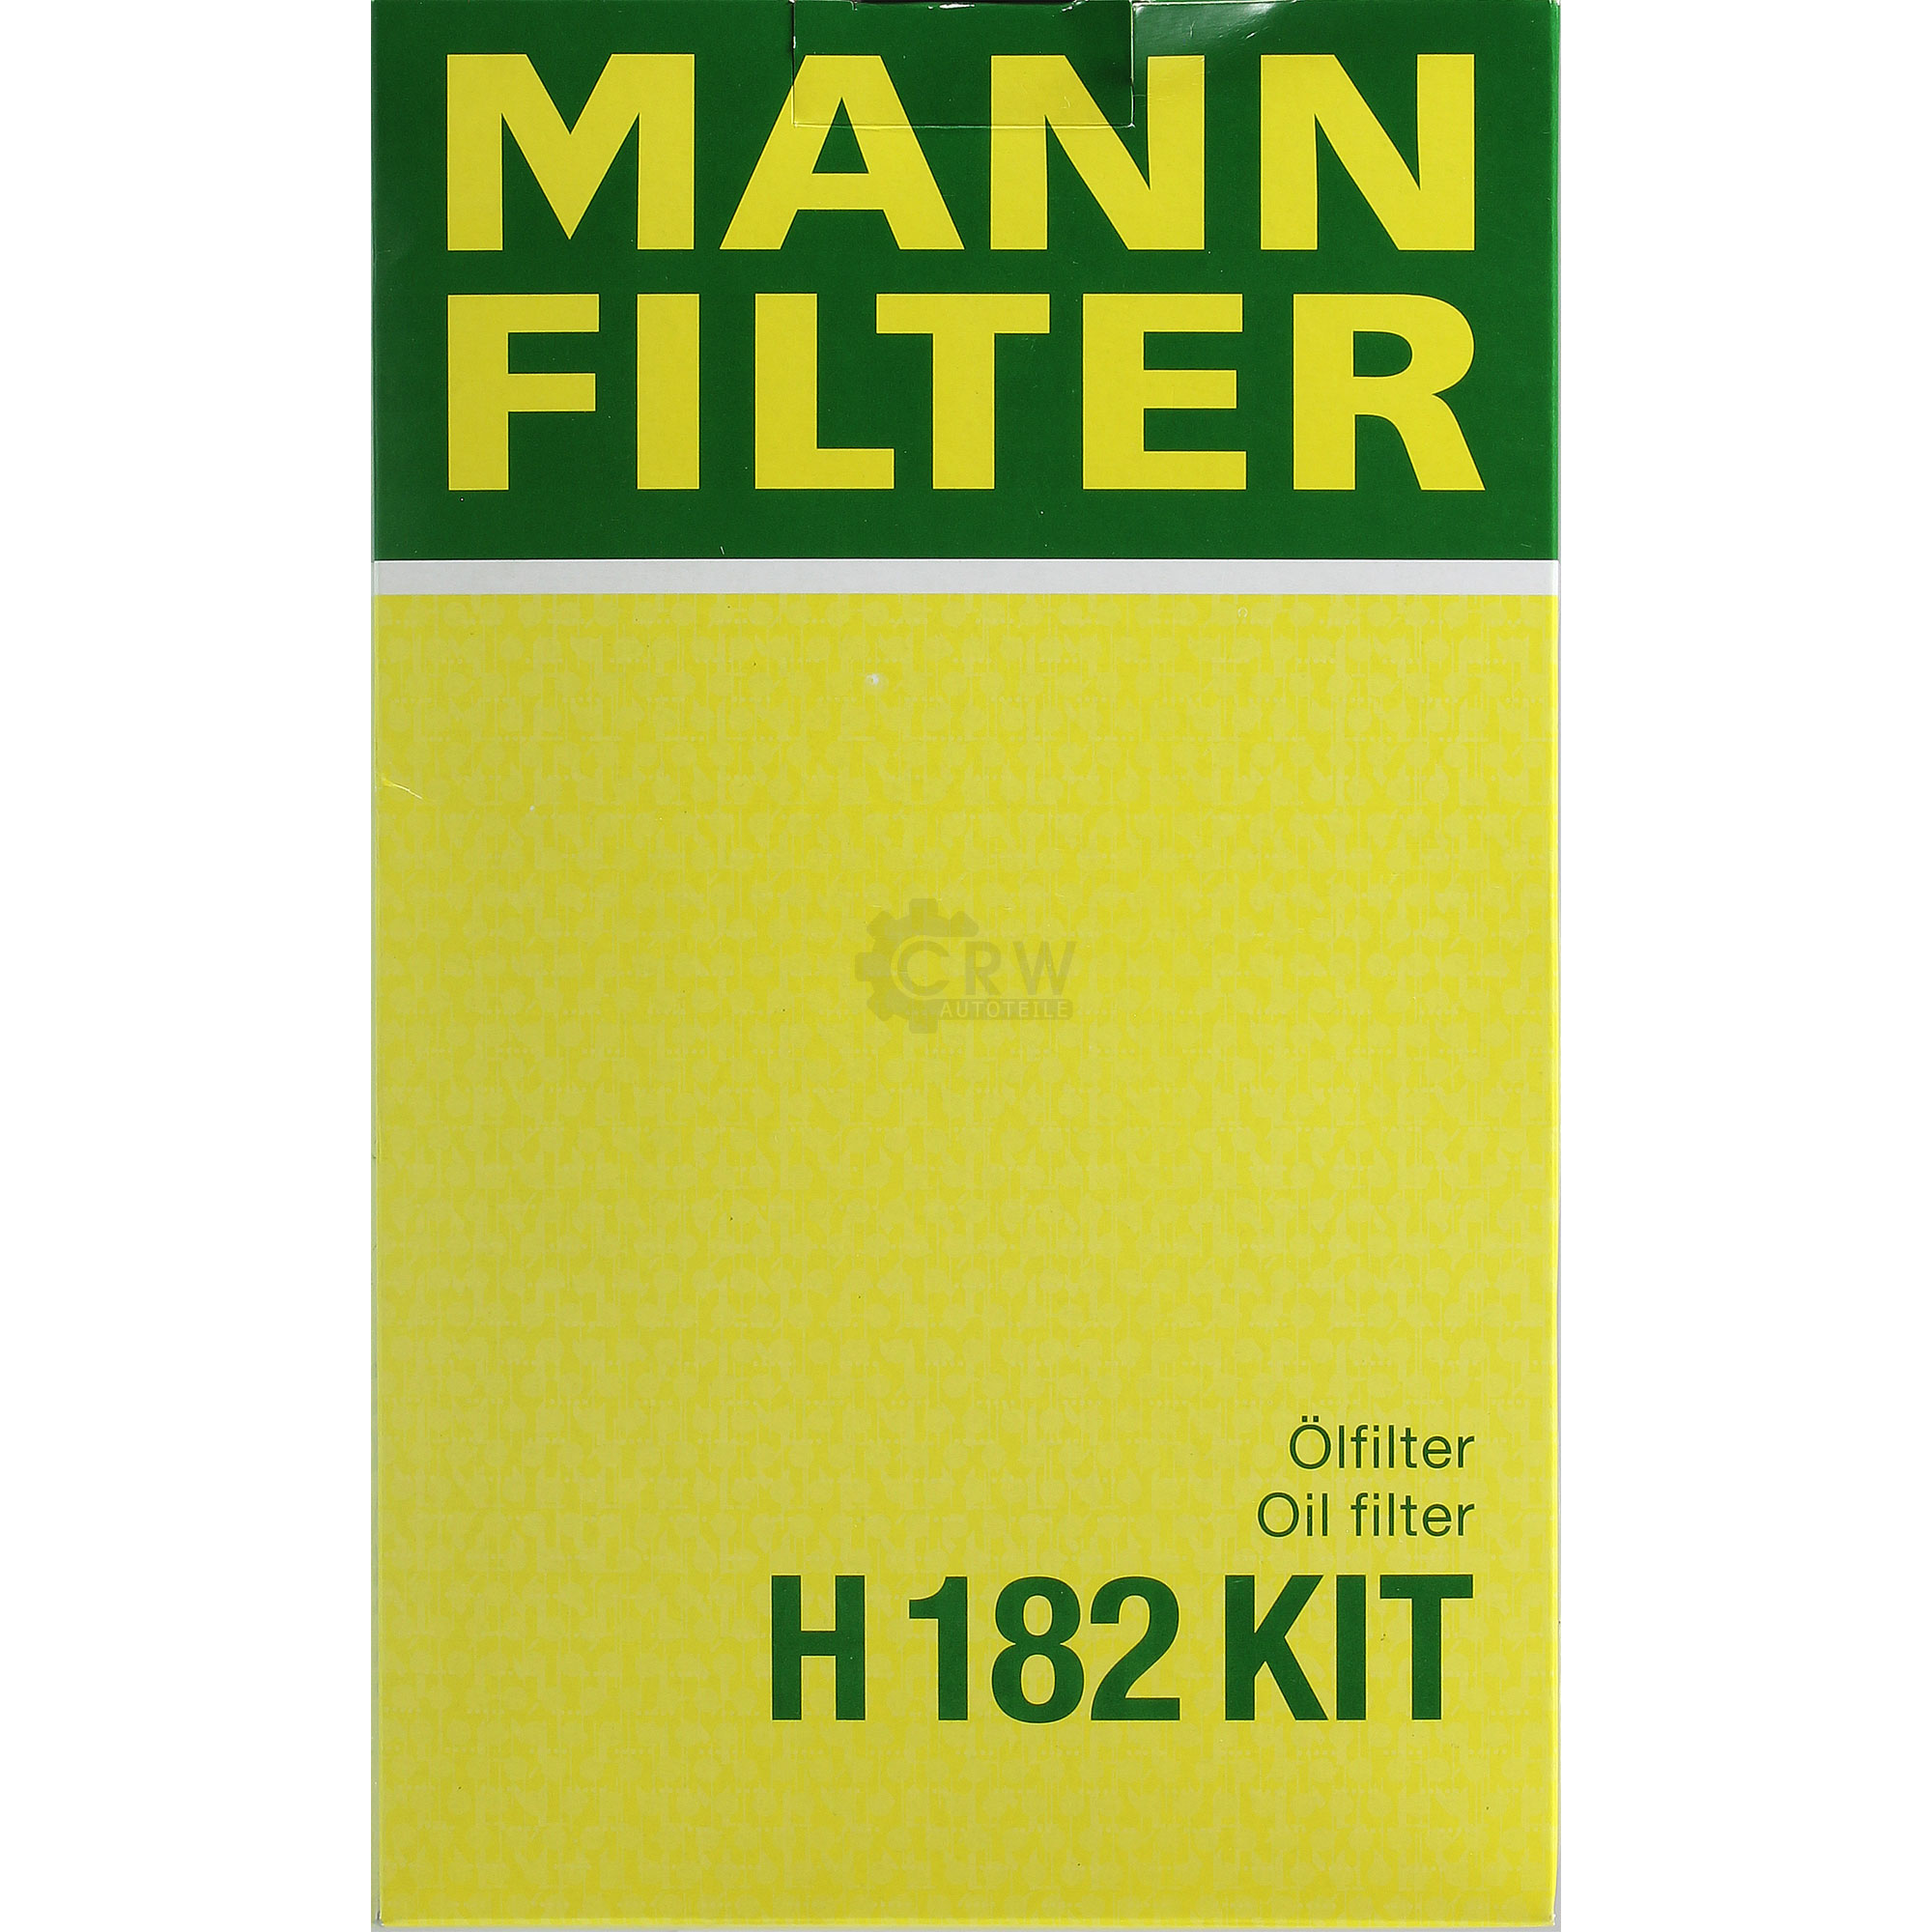 MANN-FILTER Getriebeölfilter für Automatikgetriebe H 182 KIT